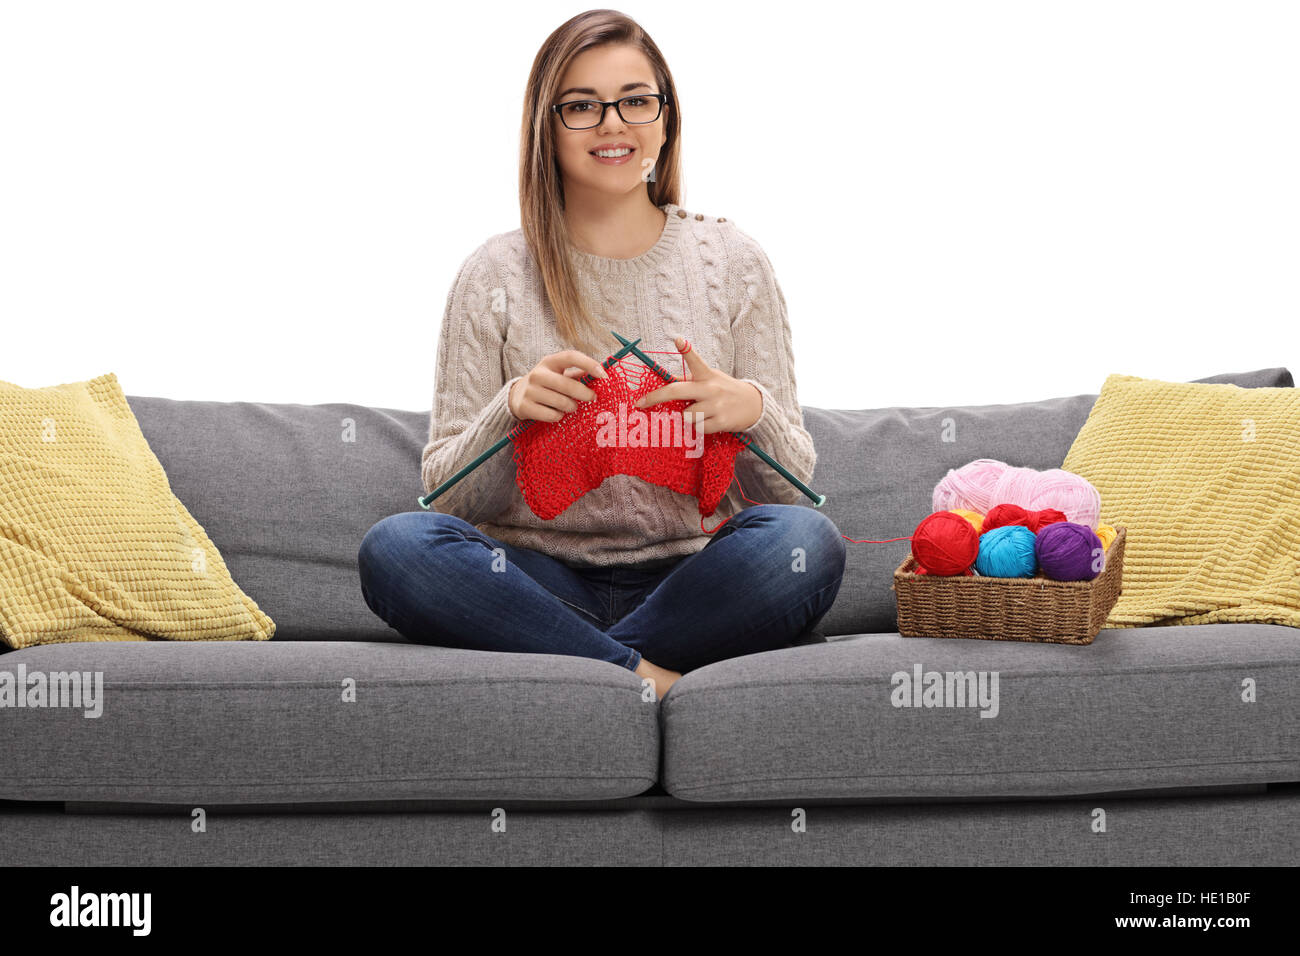 Fröhliche Mädchen auf einem Sofa stricken und schaut in die Kamera, die isoliert auf weißem Hintergrund Stockfoto